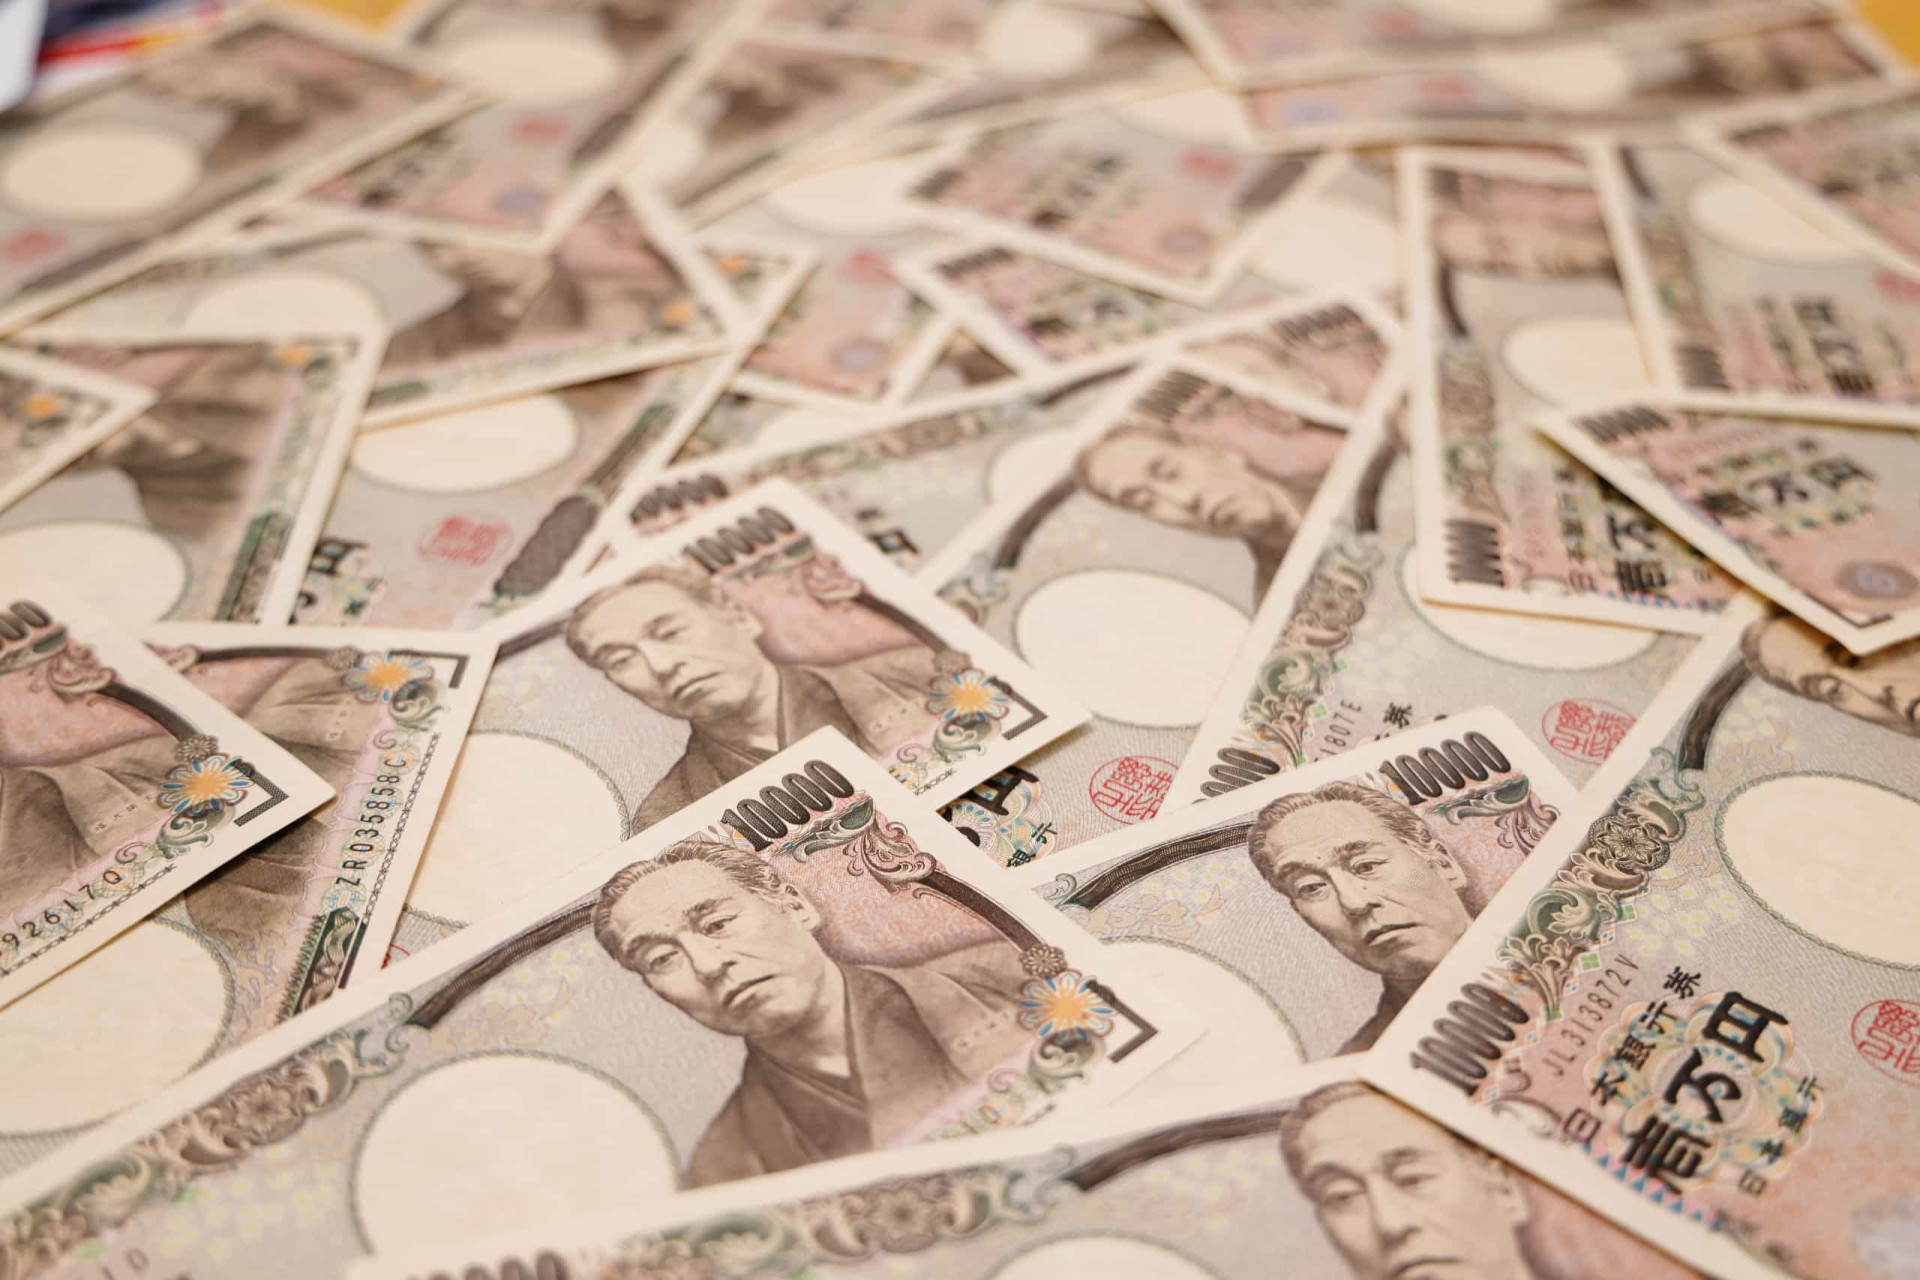 <p>Le Yen est la devise du Japon. La création de nouveaux billets a été annoncée pour 2024, qui contiendront des images de personnages japonais célèbres. Le billet de 1000 Yens portera au verso "La Grande Vague de Kanagawa".</p> <p>Découvrez aussi : <a class="gs-title" href="https://www.starsinsider.com/fr/voyage/223454/le-japon-une-splendeur-incomparable" rel="noopener">Le Japon, une splendeur incomparable</a></p><p><a href="https://www.msn.com/fr-fr/community/channel/vid-7xx8mnucu55yw63we9va2gwr7uihbxwc68fxqp25x6tg4ftibpra?cvid=94631541bc0f4f89bfd59158d696ad7e">Suivez-nous et accédez tous les jours à du contenu exclusif</a></p>